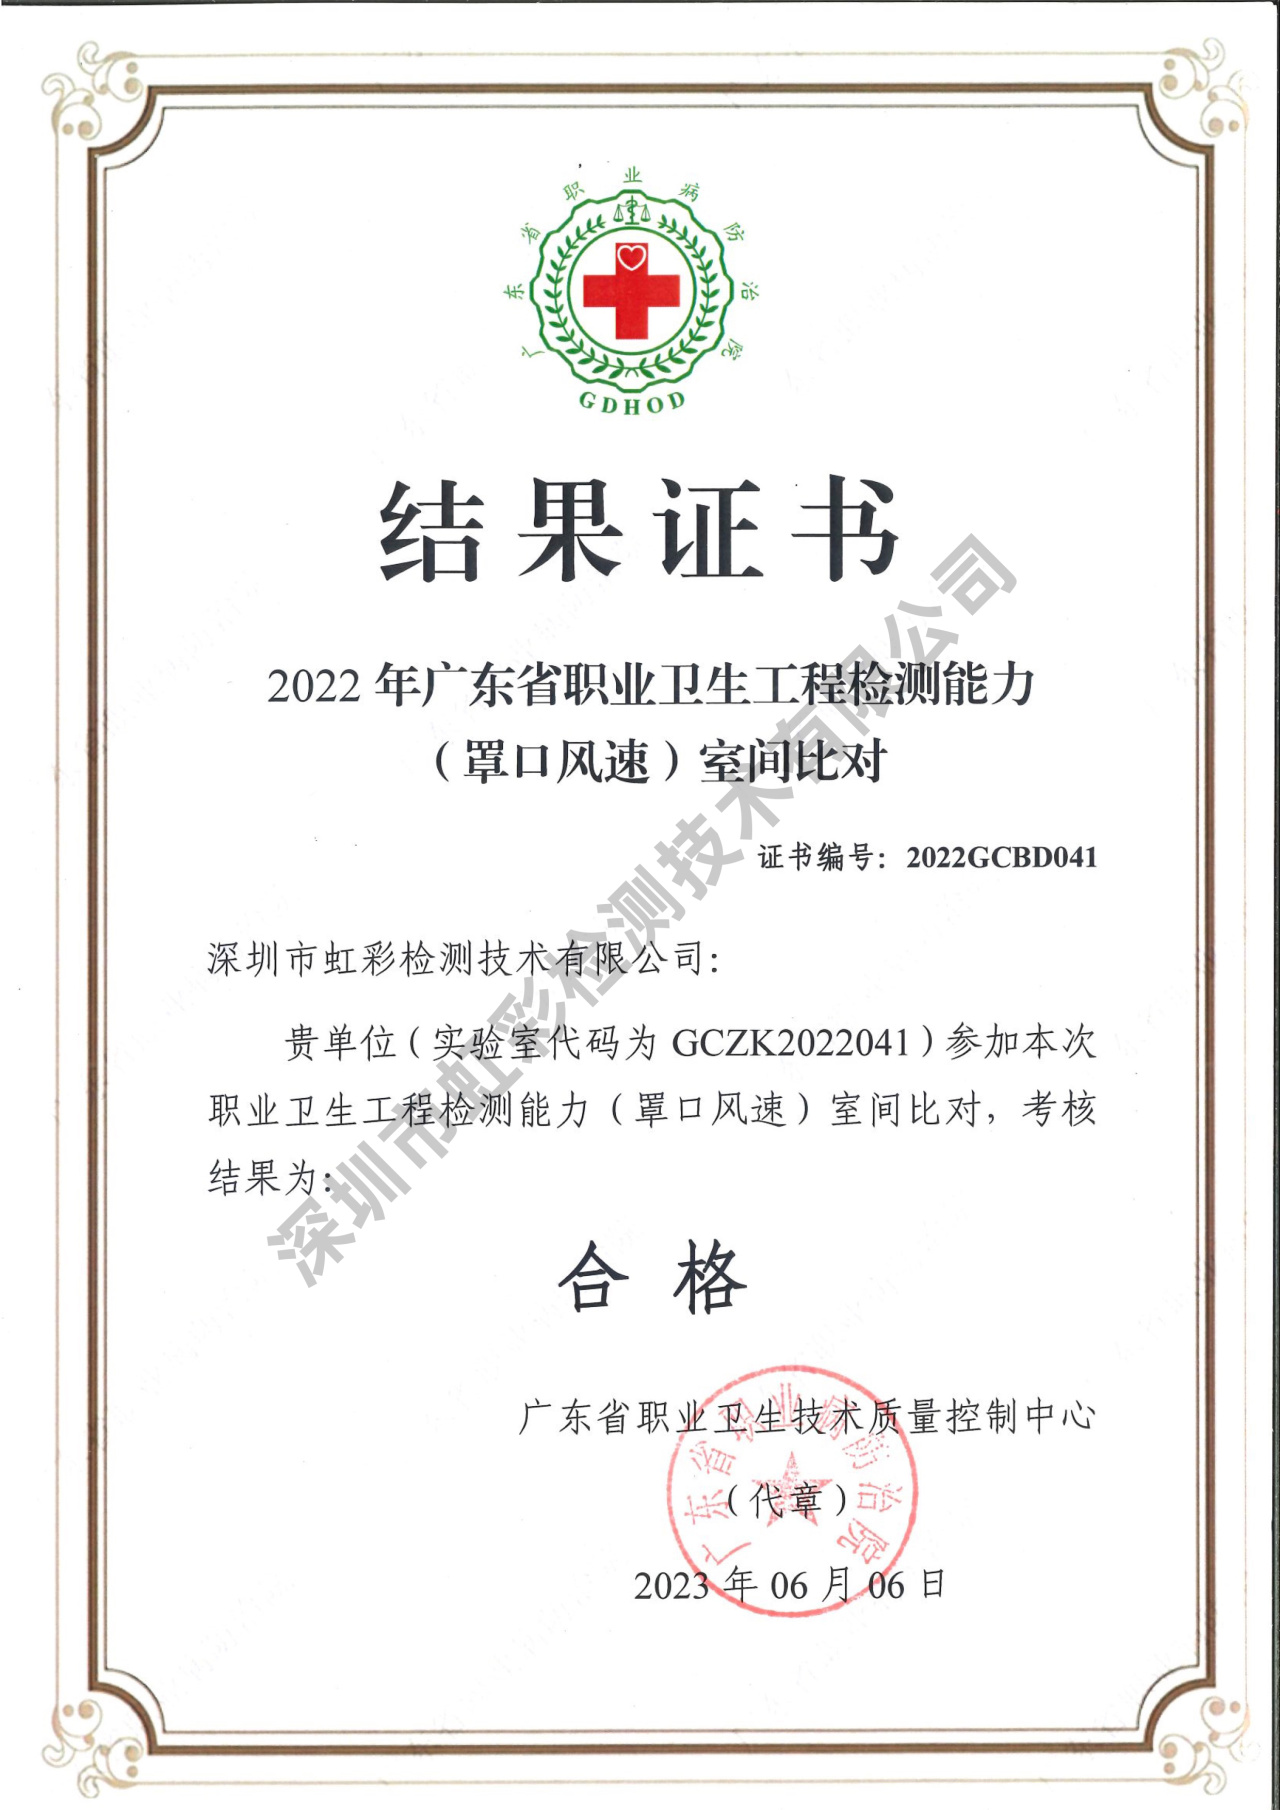 虹彩检测在2022年广东省职业卫生工程检测能力（罩口风速）室间比对活动中获满意结果(图2)